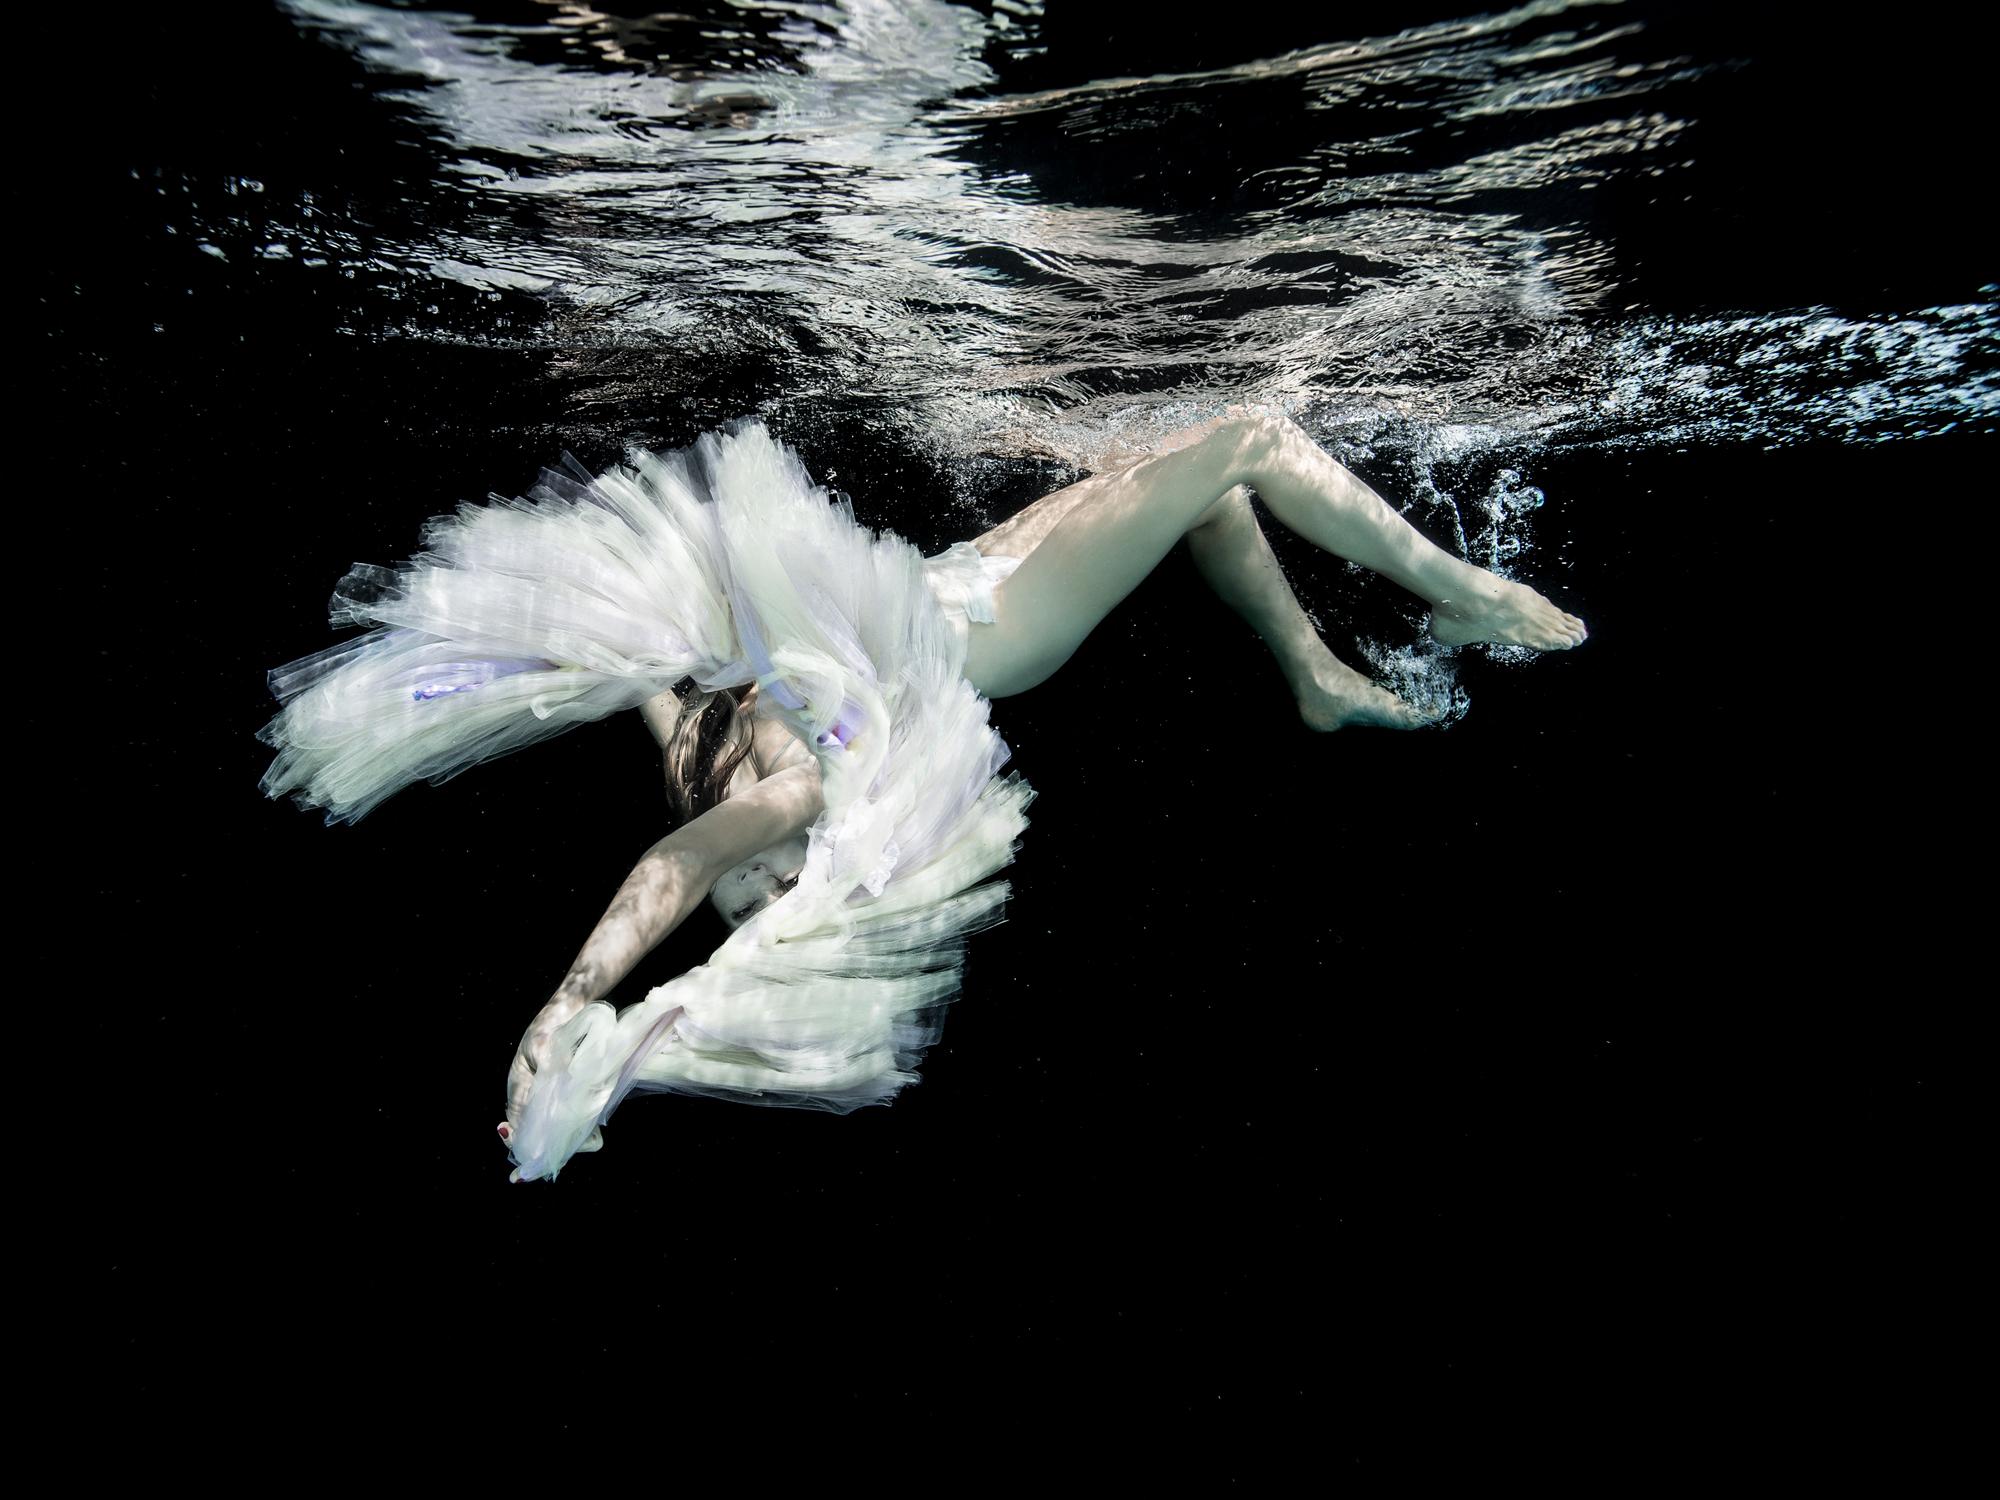 Ballet - photographie de nu sous-marine en noir et blanc - pigment d'archives 27" x 35"